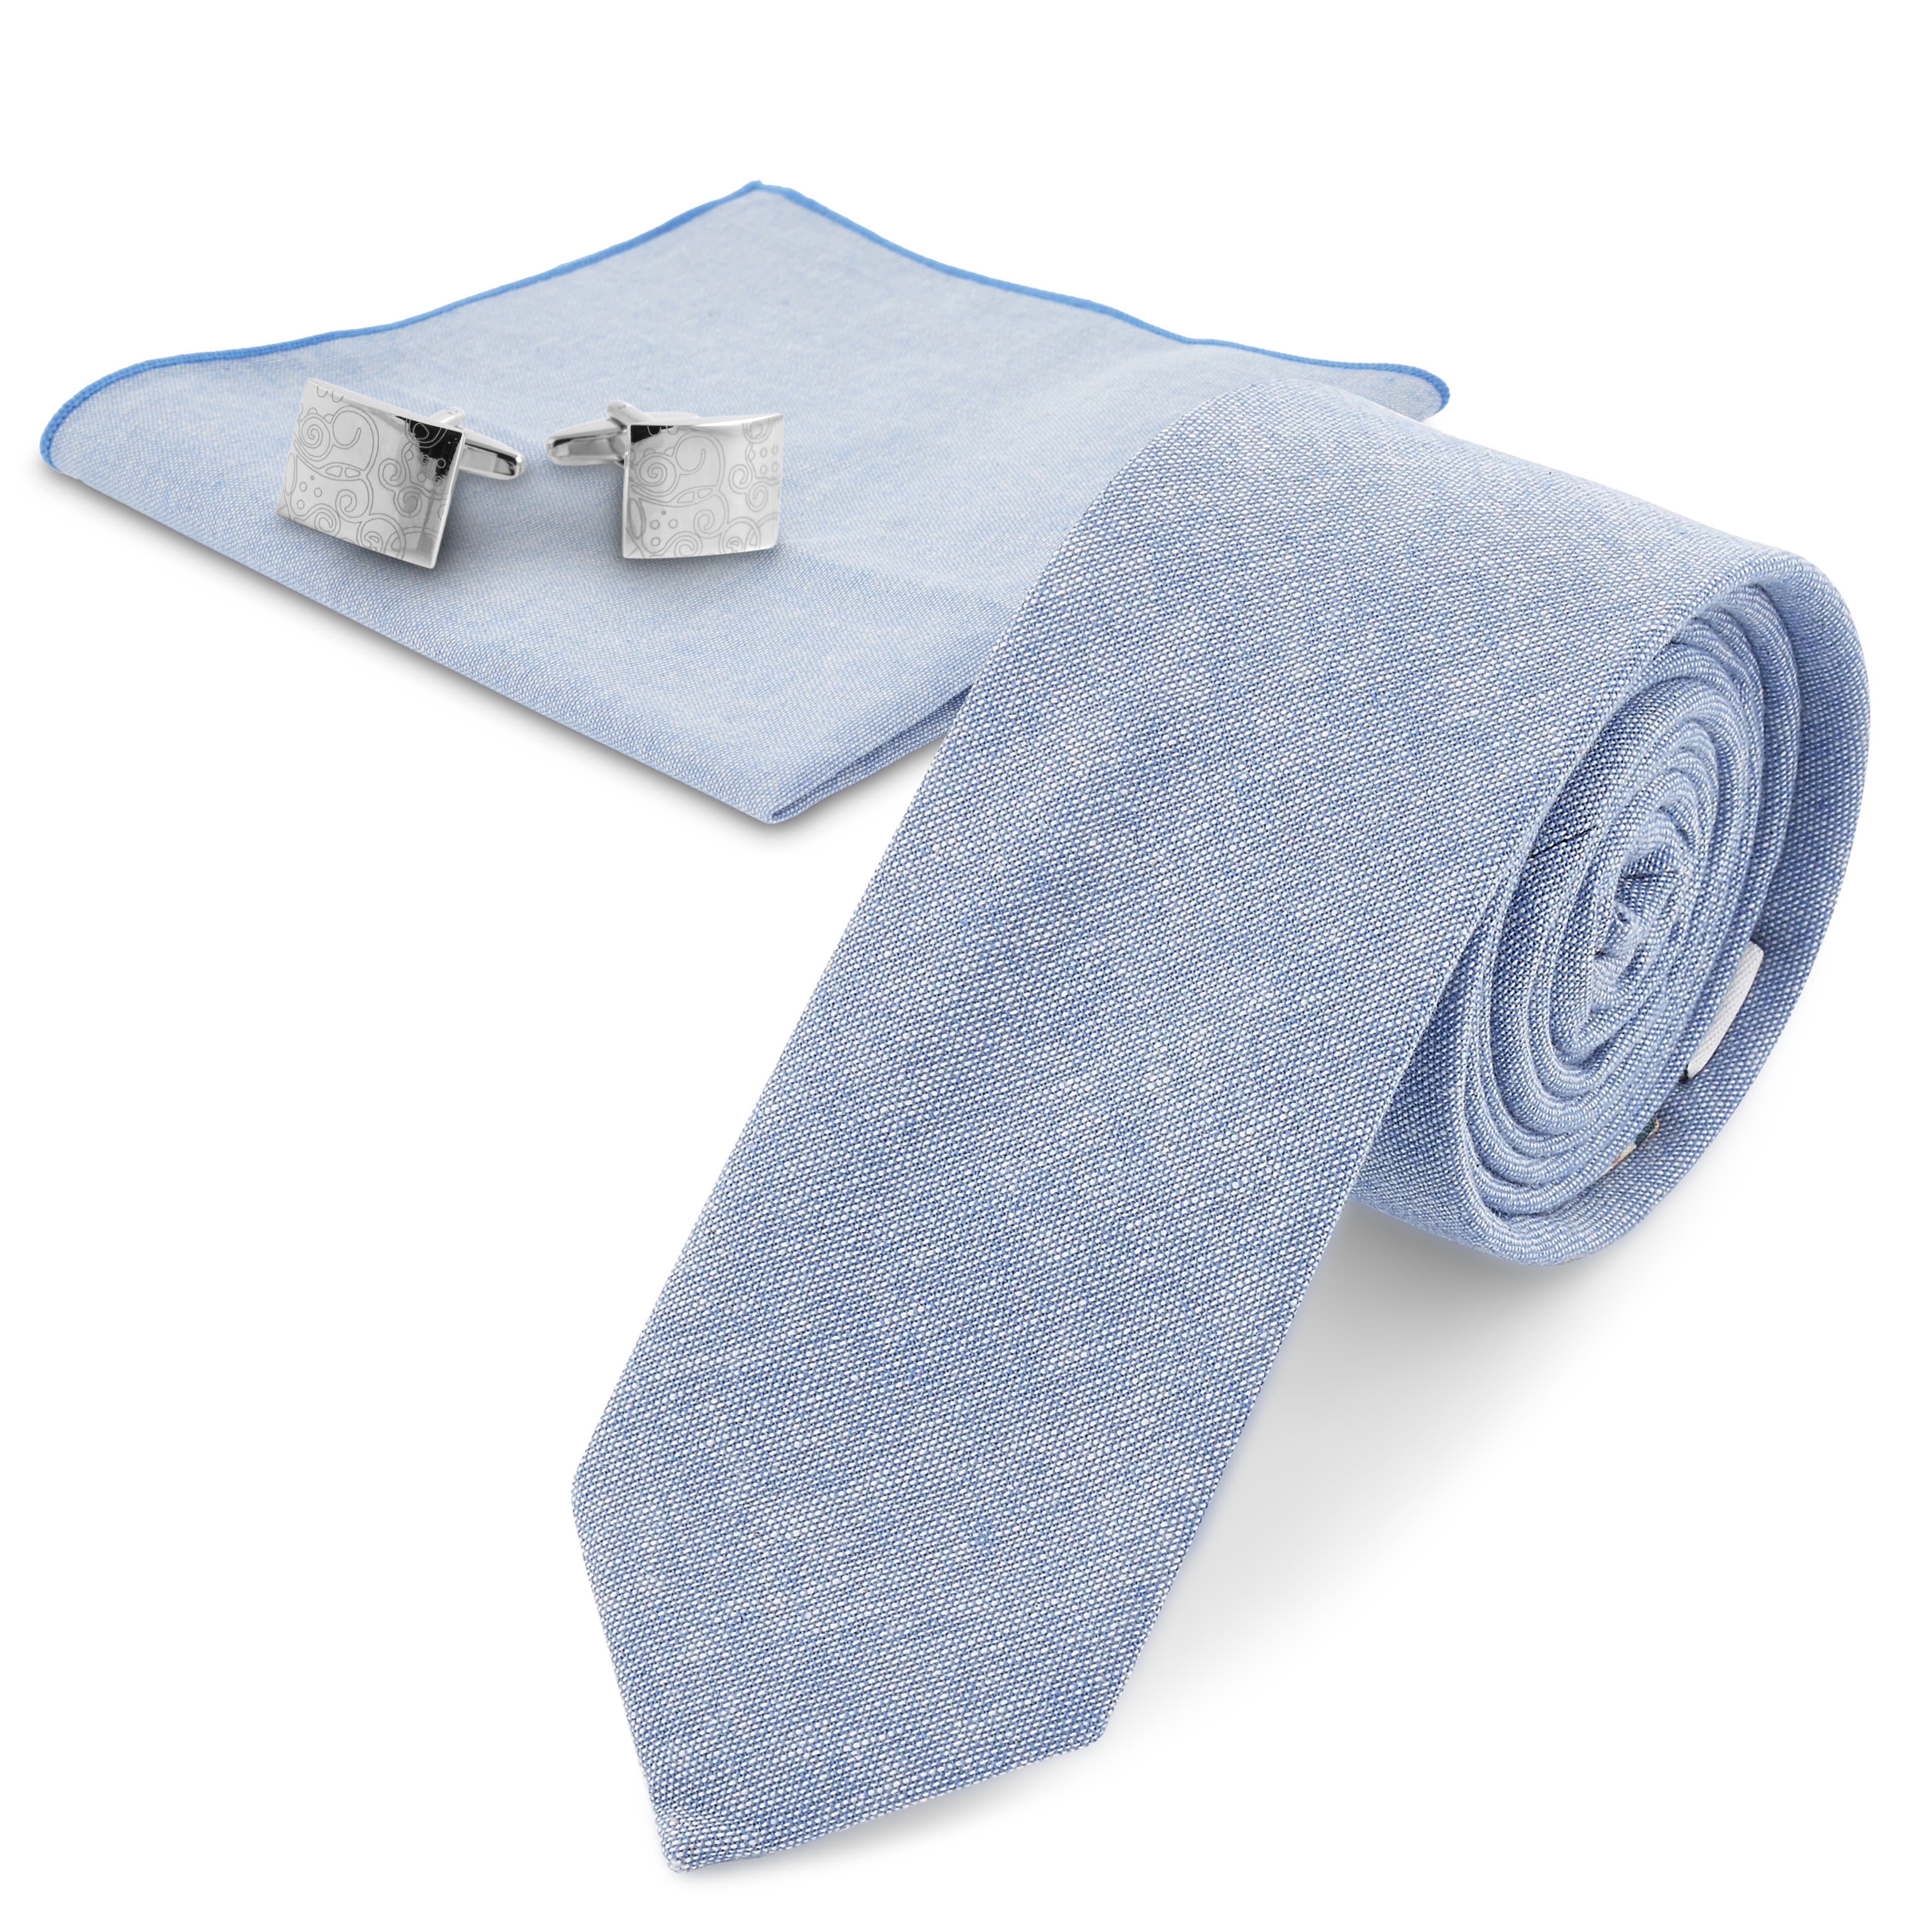 Blassblaues und silberfarbenes Anzug-Accessoires-Set